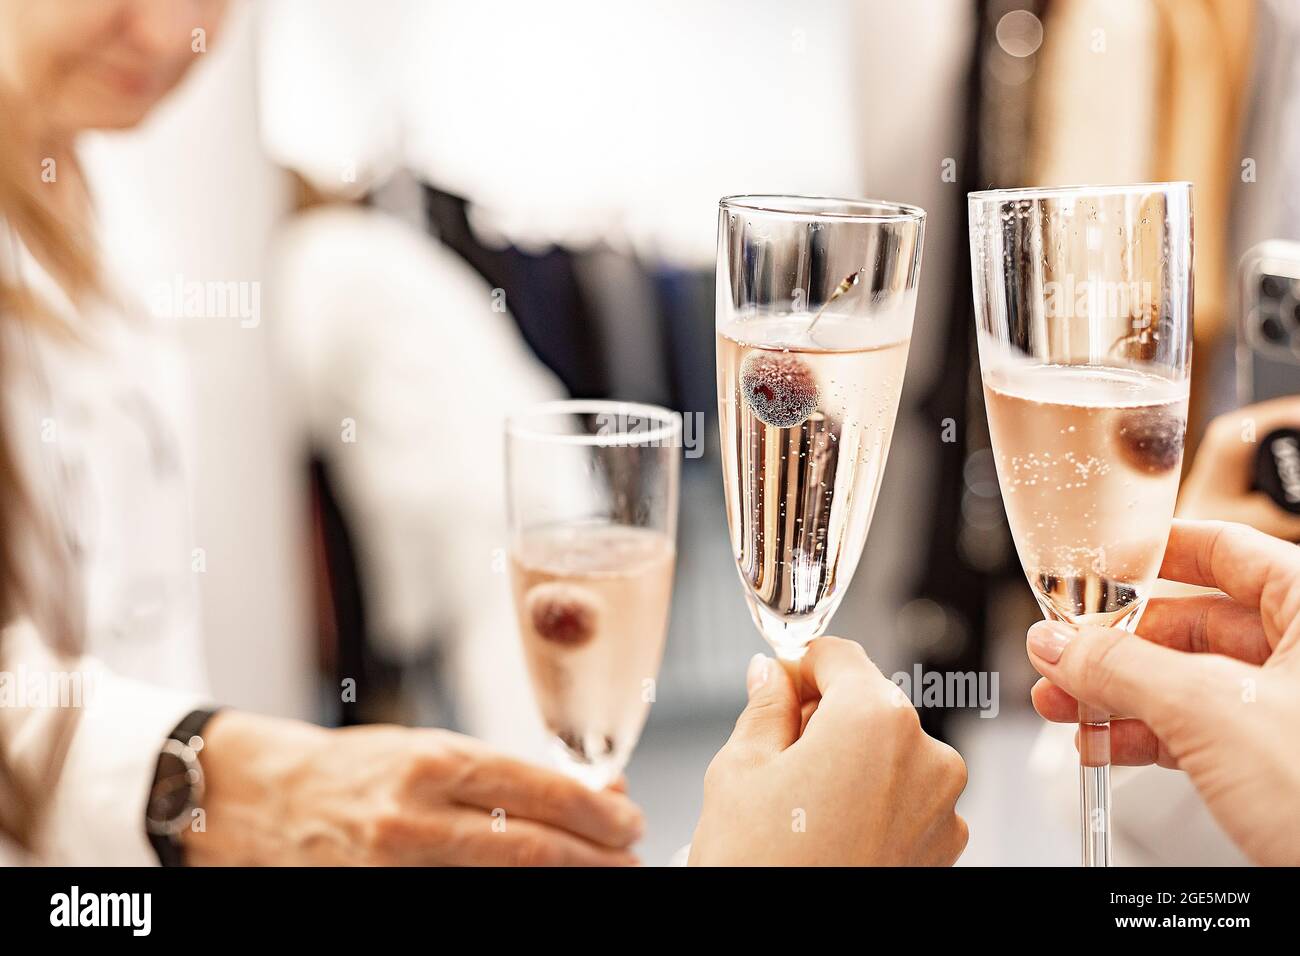 Schöne weibliche Hände halten Gläser Champagner oder Rosenwein. Nahaufnahme. Frauen klirrrende Gläser. Feiern, feiern oder feiern Sie das neue Jahr. Weichfokus Stockfoto